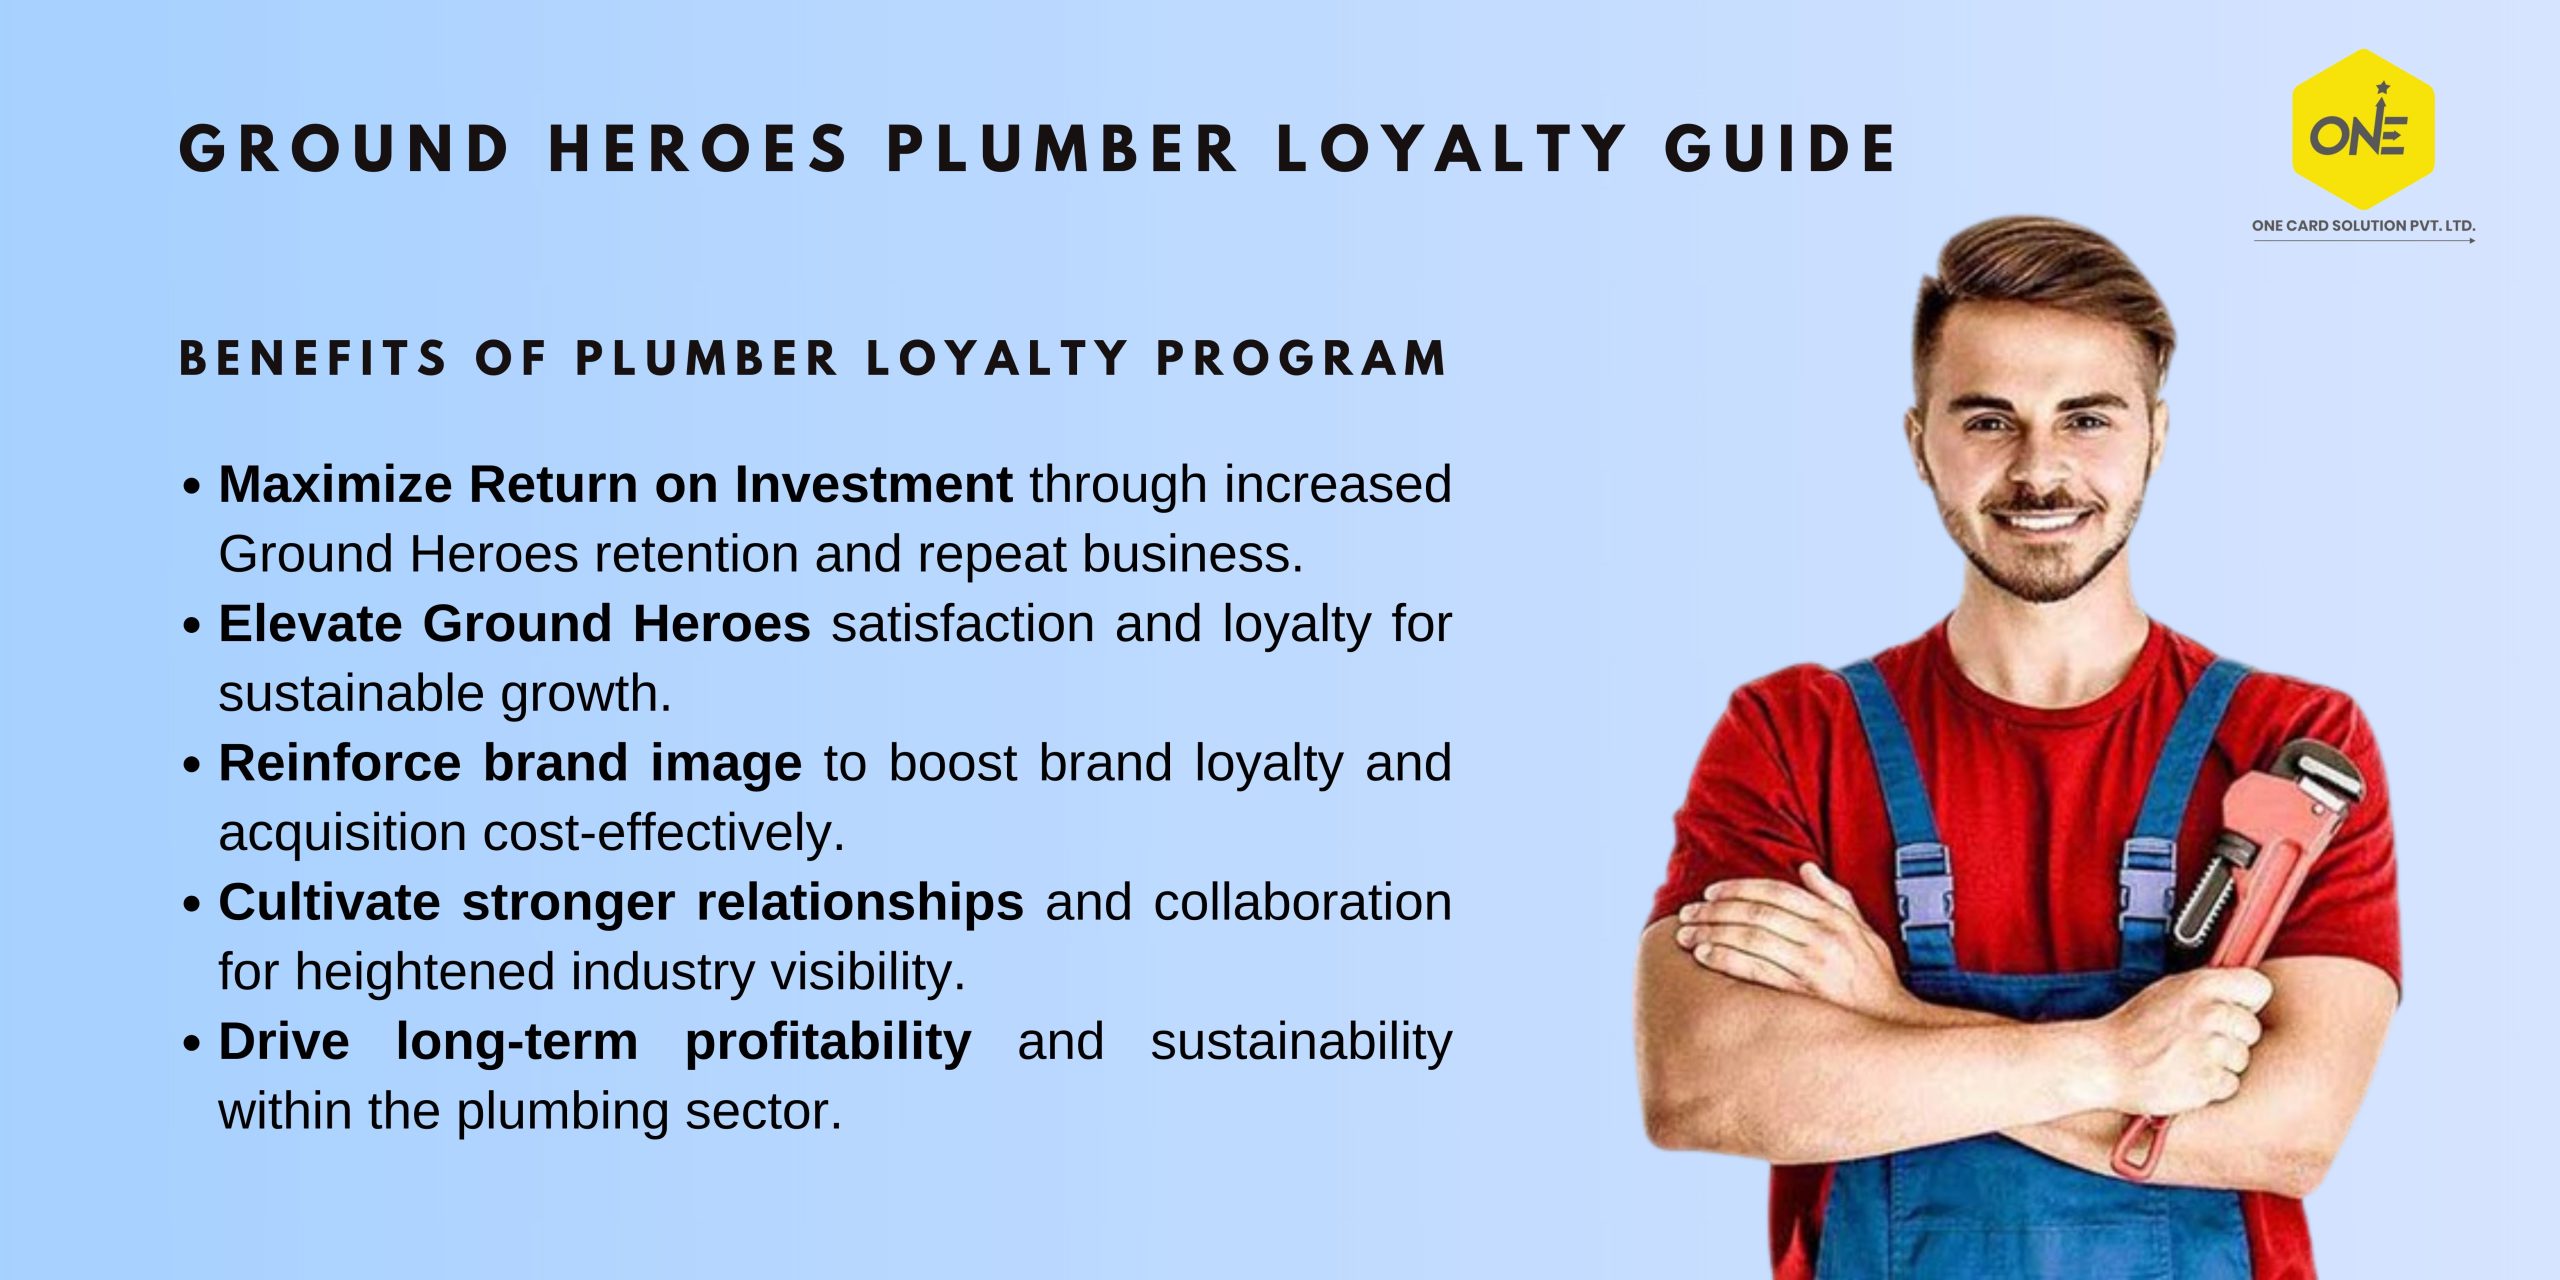 Ground Heroes “Plumber” Loyalty Program Guide